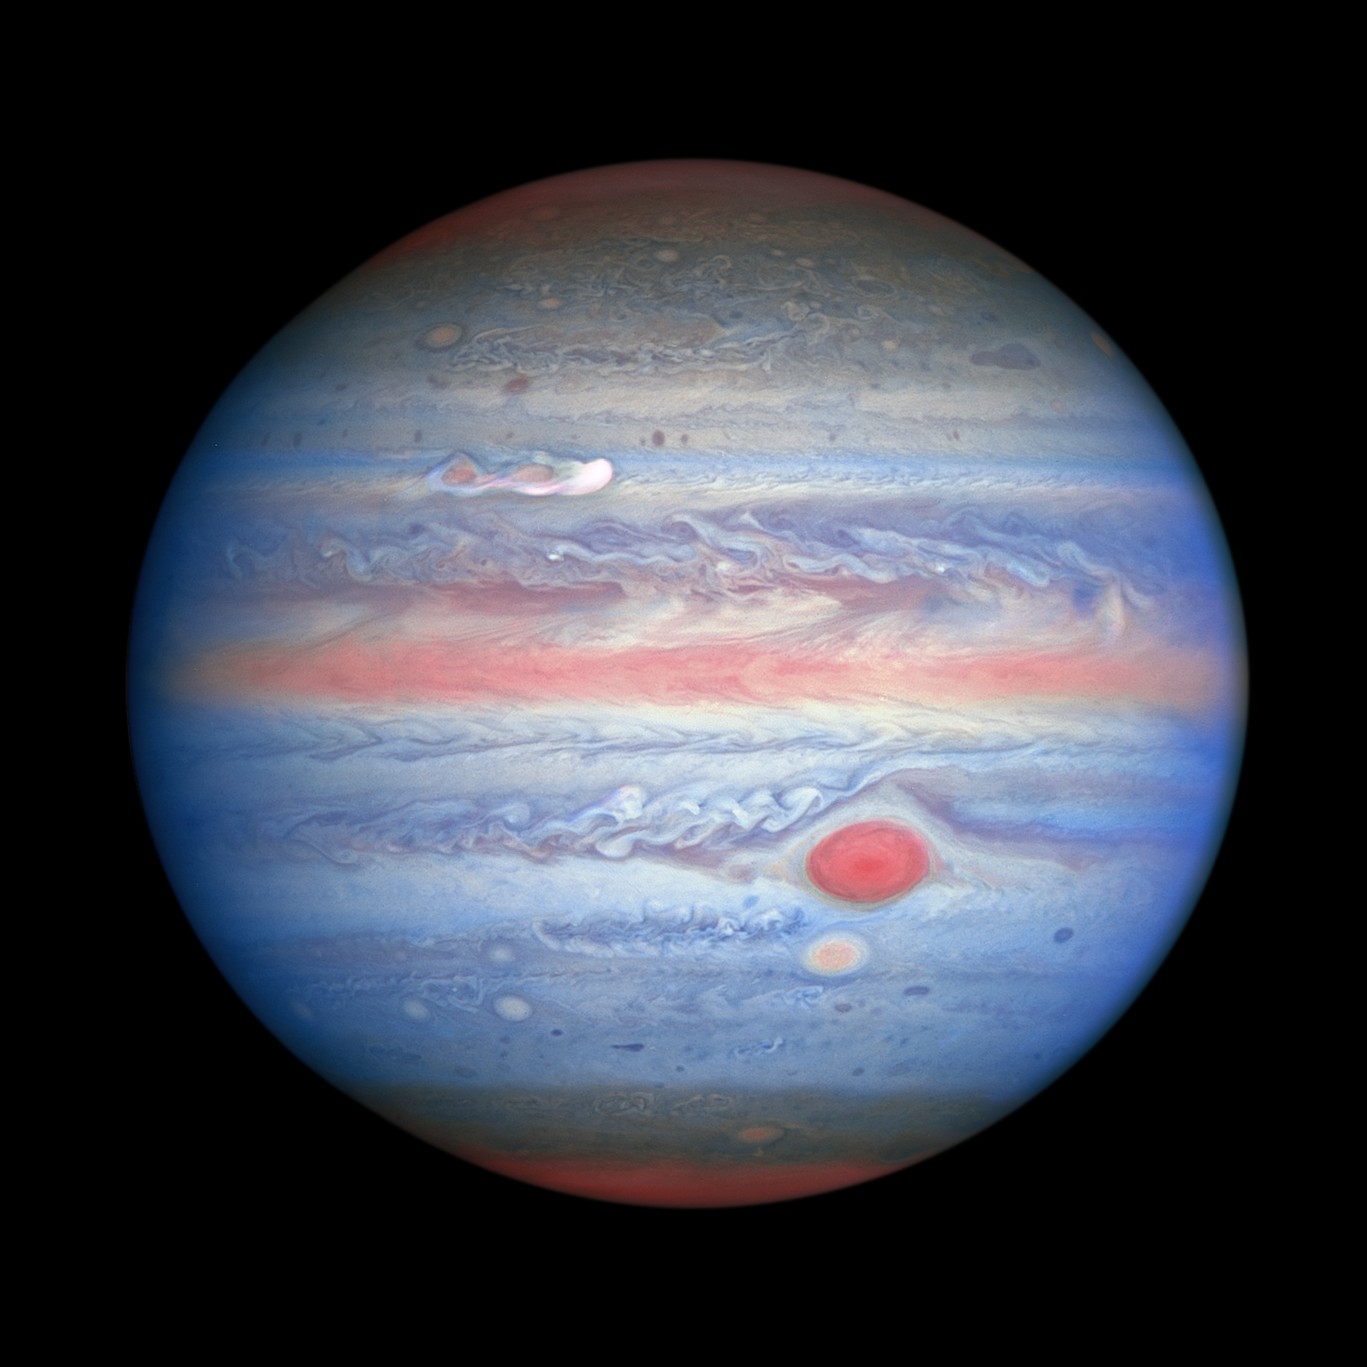 Imagem de Júpiter capturada pelo telescópio espacial Hubble em luz ultravioleta, visível e quase infravermelha em 25 de agosto de 2020; astrônomos perceberam uma nova tempestade se formando no canto superior esquerdo (Foto: NASA, ESA, STScI, A. Simon (Goddard Space Flight Center), M.H. Wong (University of California, Berkeley), and the OPAL team)